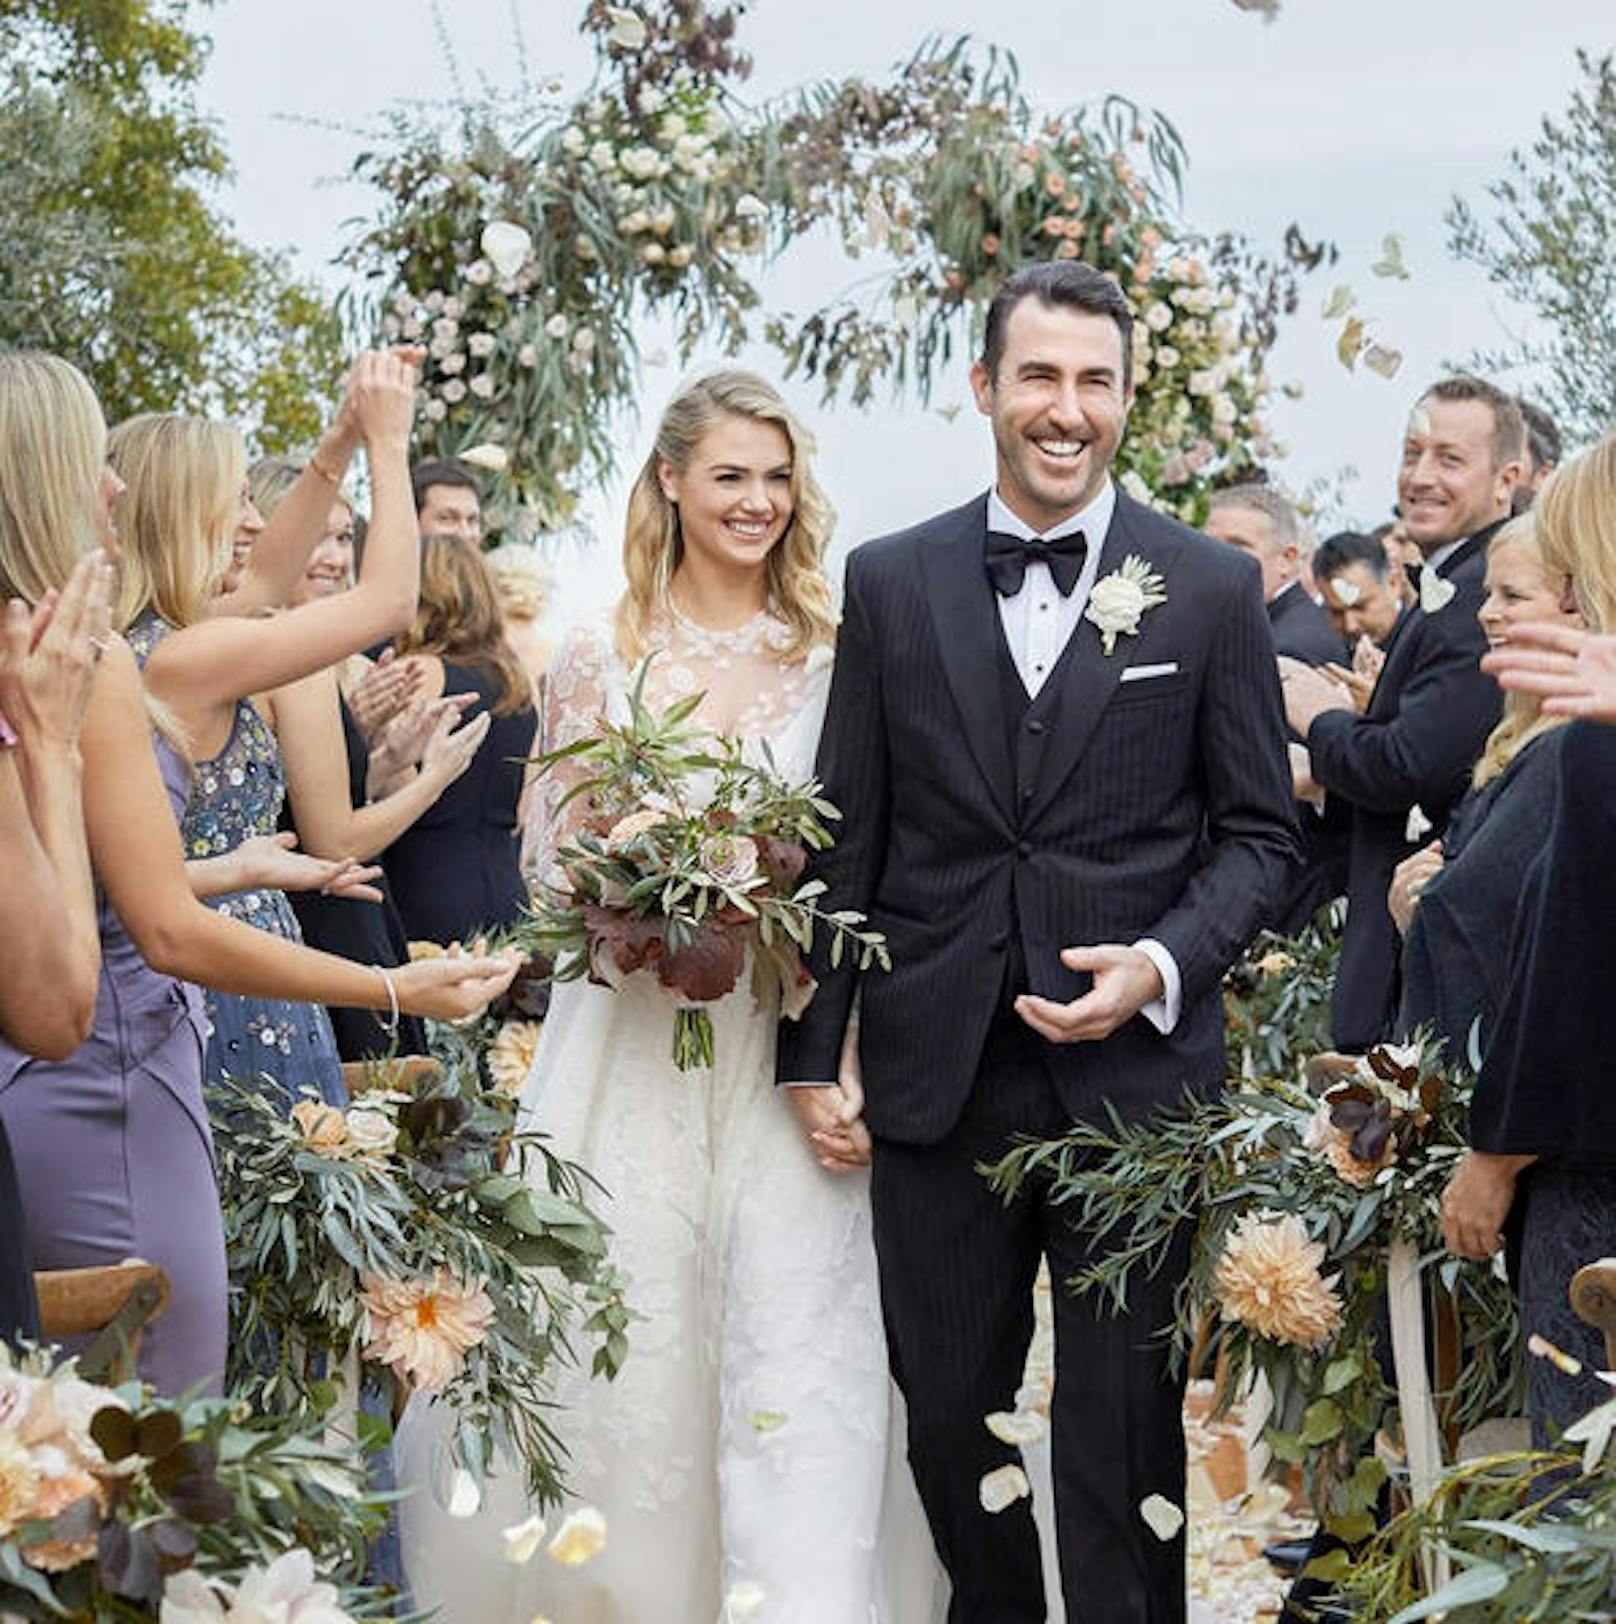 Kate Upton heiratete ihren Schatz in diesem Sommer: Baseballer Justin Verlander.